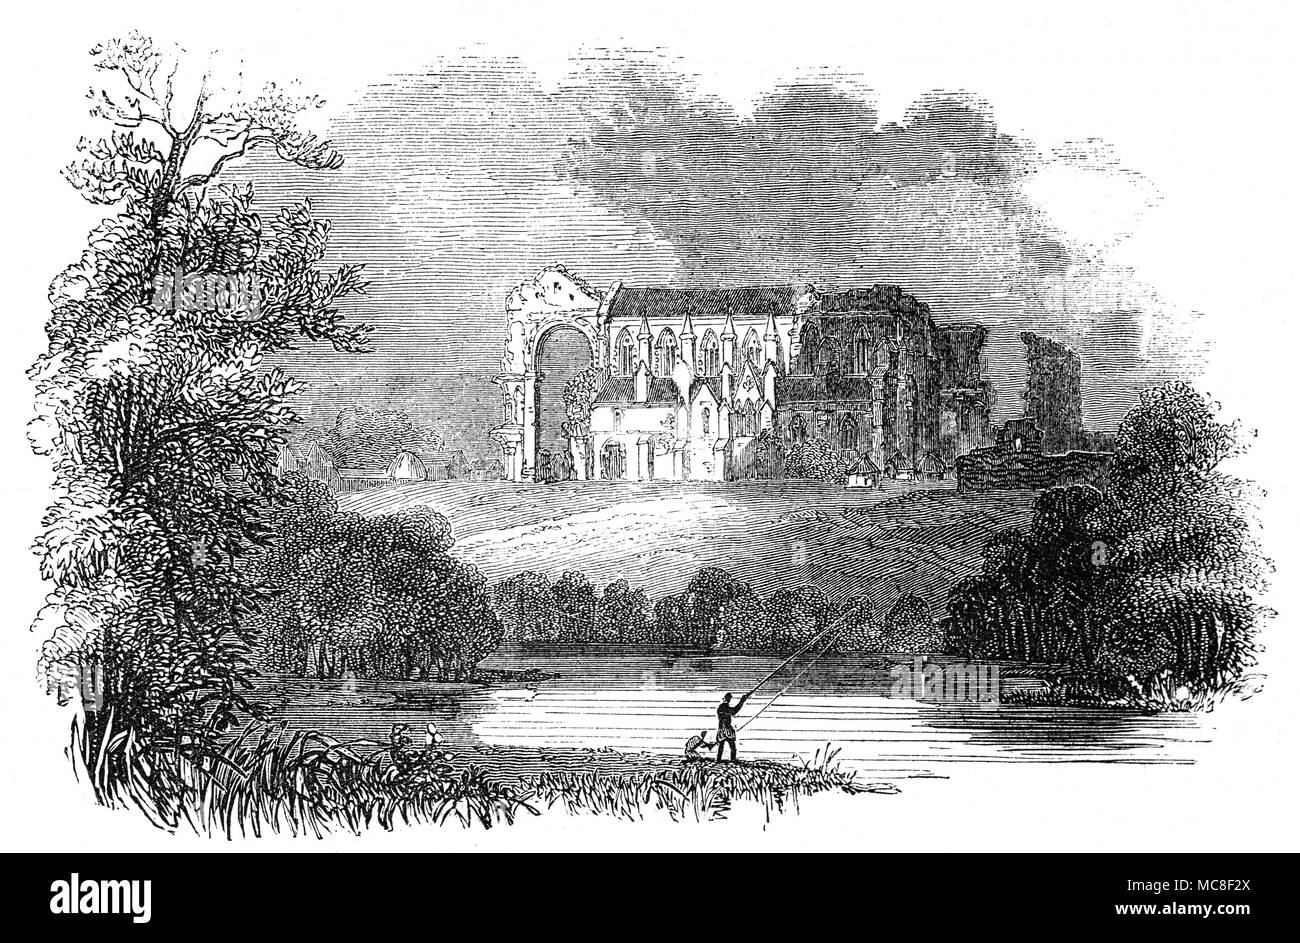 Il Pescatore sul fiume Avon davanti a Malmesbury Abbey, a Malmesbury nel Wiltshire, Inghilterra, è una delle poche case in inglese con la continuità di una storia a partire dal VII secolo attraverso la dissoluzione dei monasteri. L'abbazia fu fondata come un monastero benedettino intorno 676 dallo studioso-poeta Aldhelm, un nipote di Re Ine del Wessex. L Abbazia di corrente è stato sostanzialmente completato da 1180 ma la sua torre è sprofondato in una tempesta intorno a 1500 distruggendo gran parte della Chiesa, compresi i due terzi della navata e transetto. Foto Stock